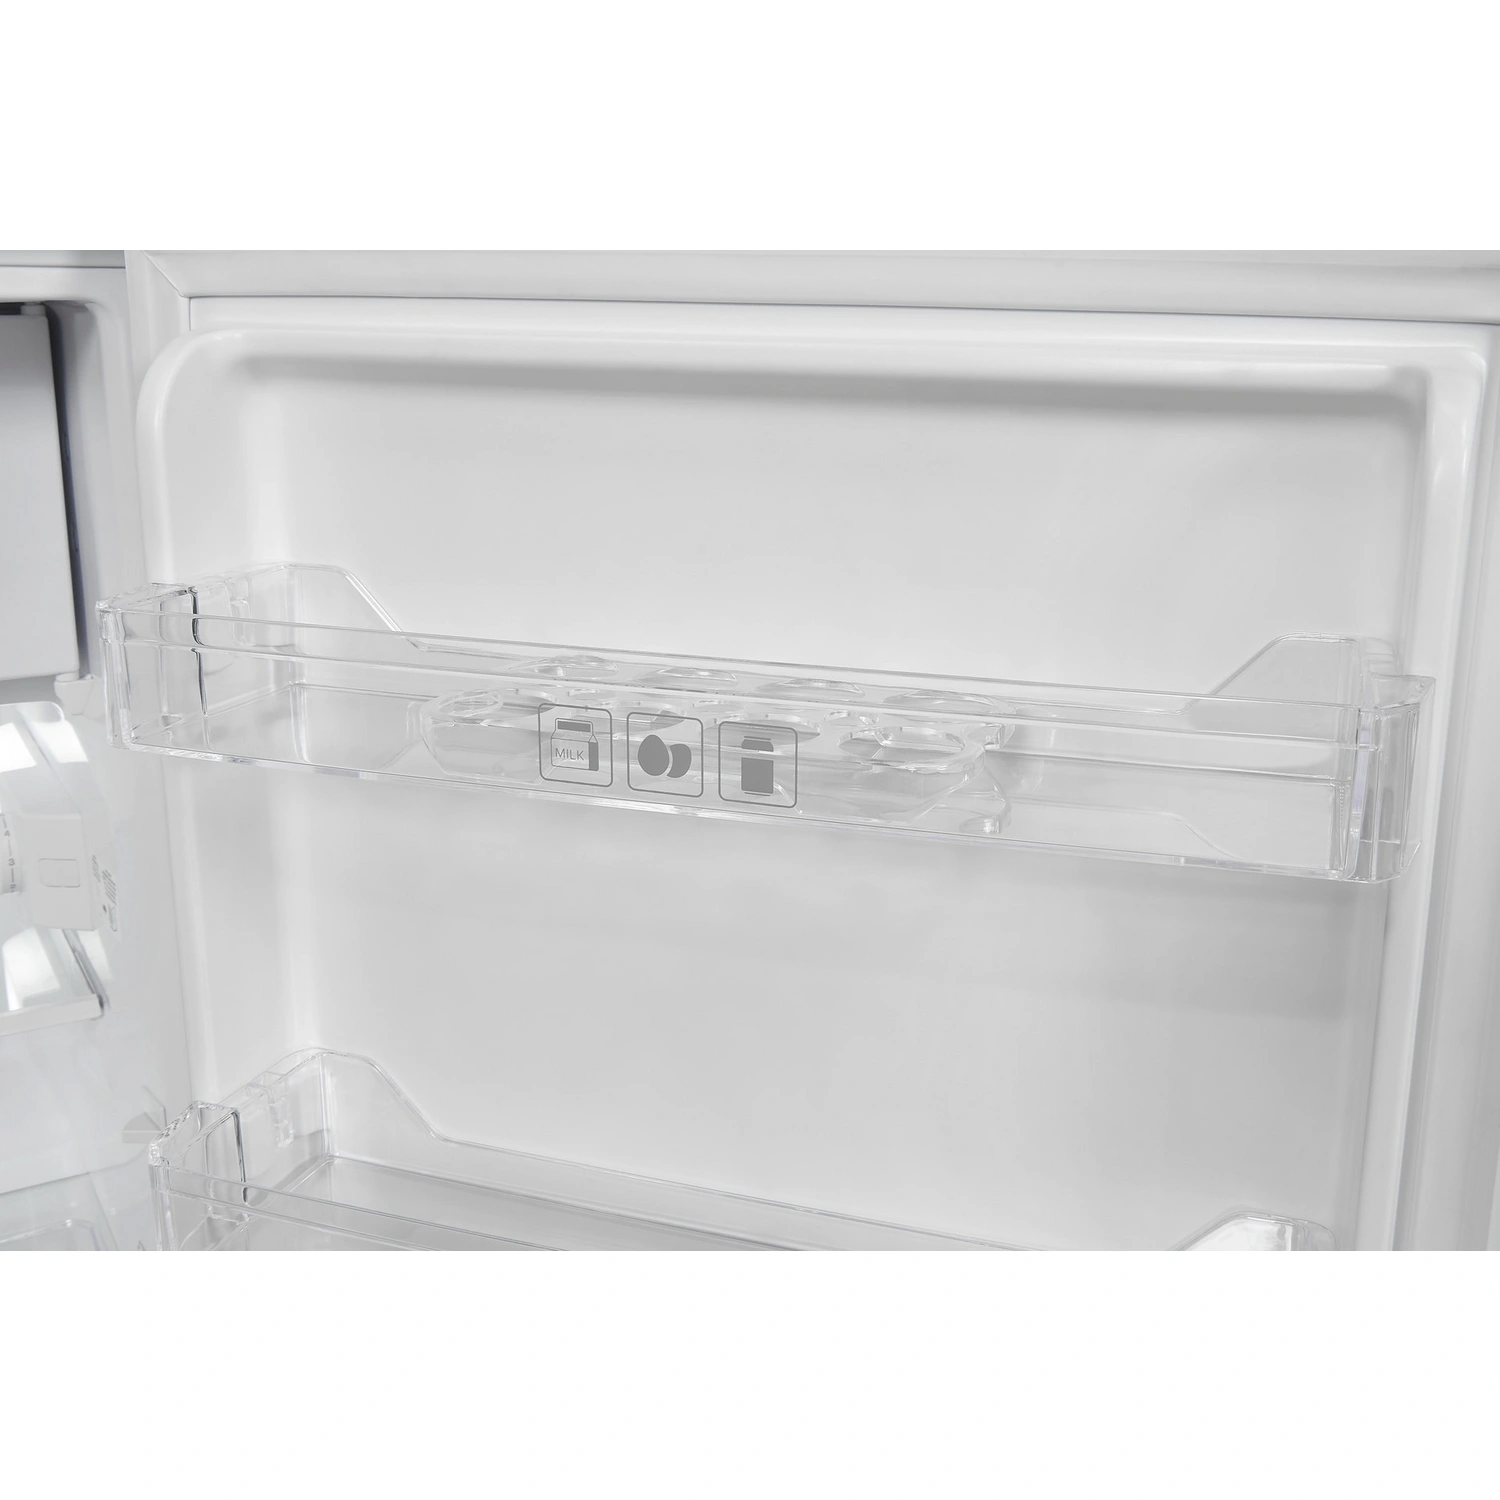 Exquisit Kühlschrank, BxHxL: 55 x 85 x 58 cm, 116 l, weiß